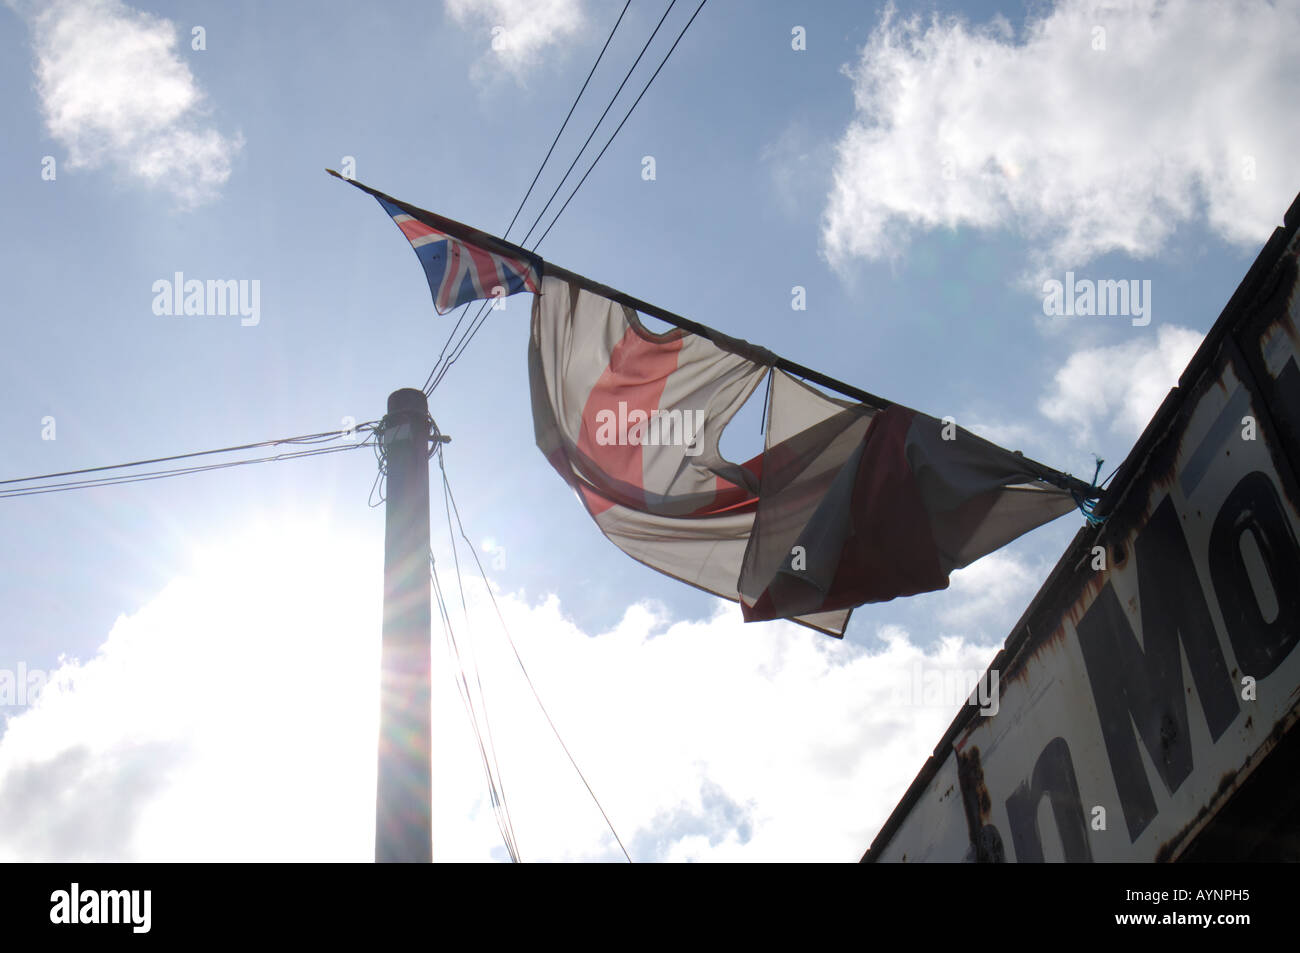 Olimpiadi 2012 site.presso il sito delle Olimpiadi del 2012 a Hackney Wick una vecchia bandiera inglese e una Unione Jack volare da un garage abbandonati Foto Stock